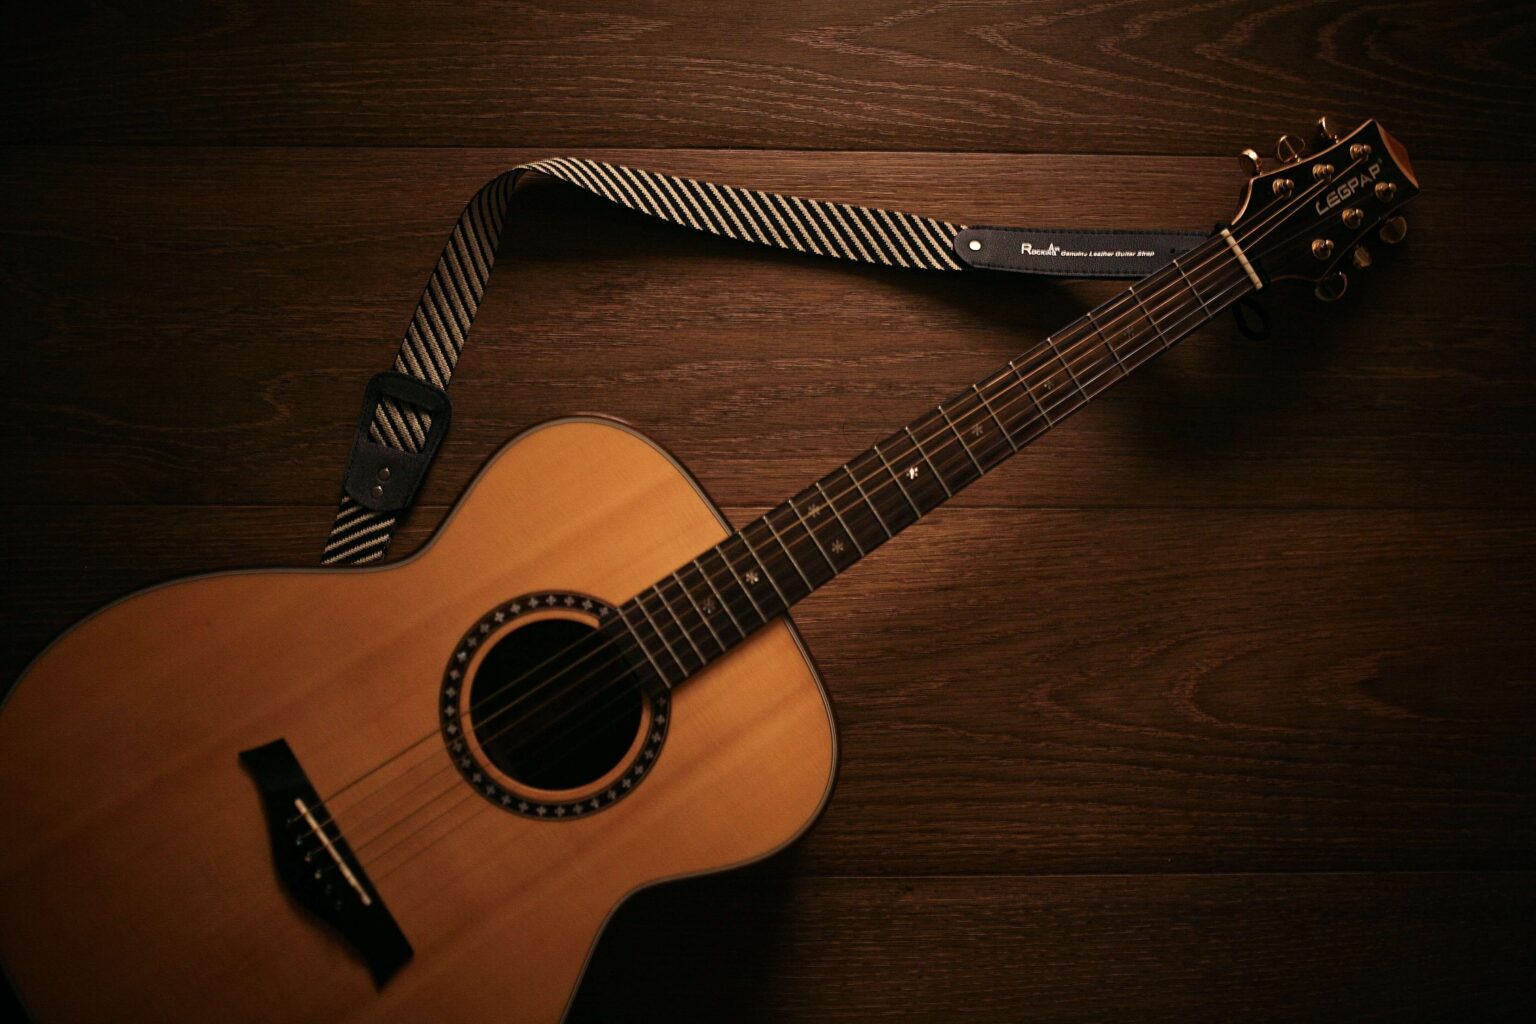 40代からでもはじめられるアコースティックギター・おすすめギター5選 | スミケラシブログ